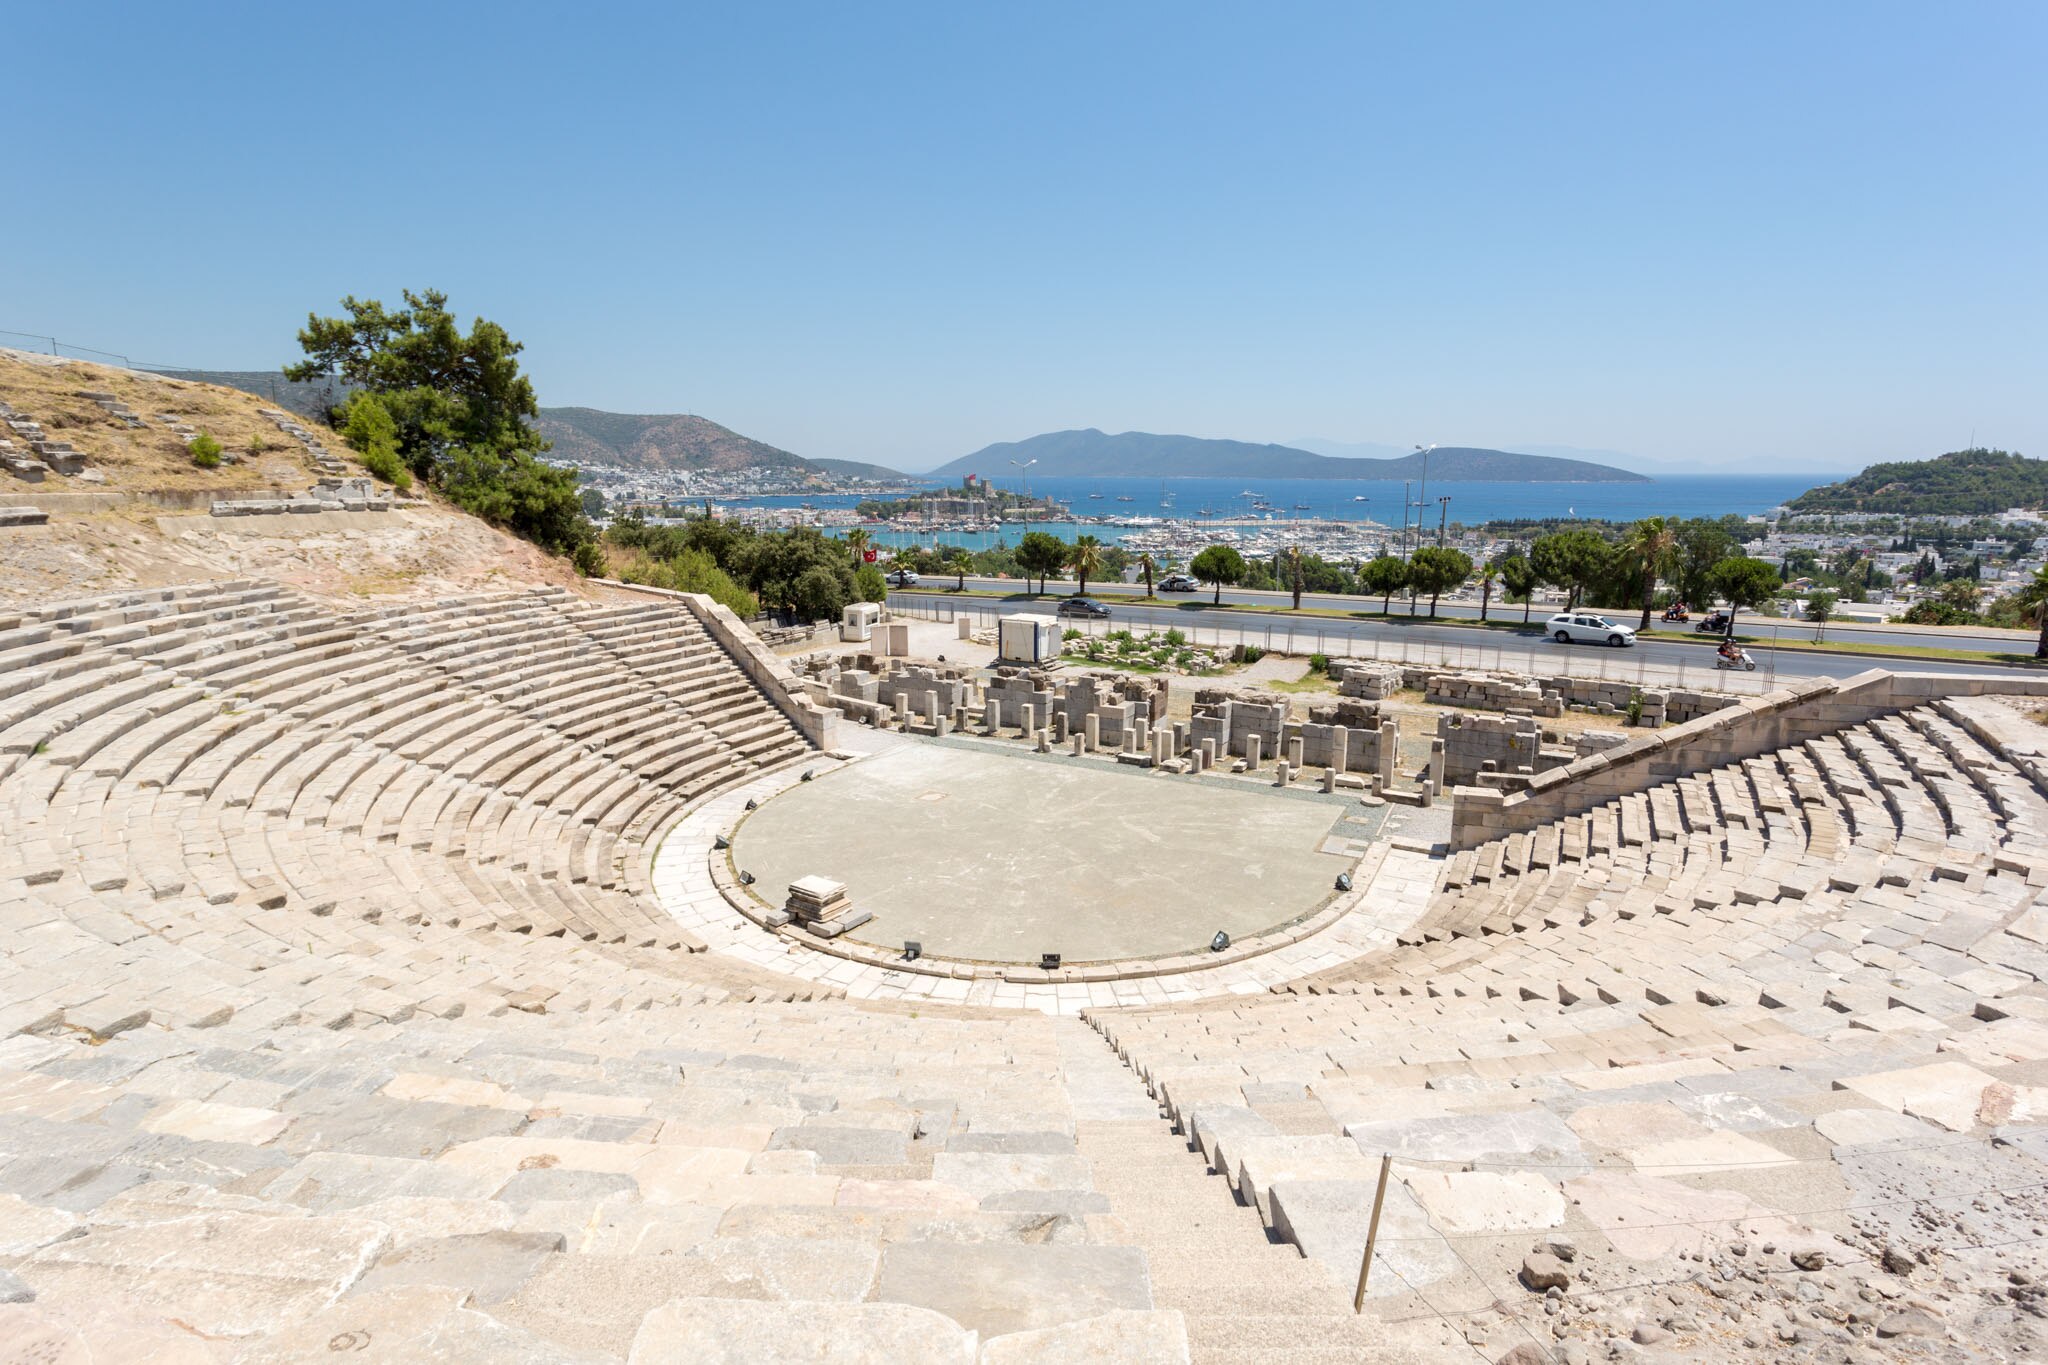 Bodrum Amphitheatre